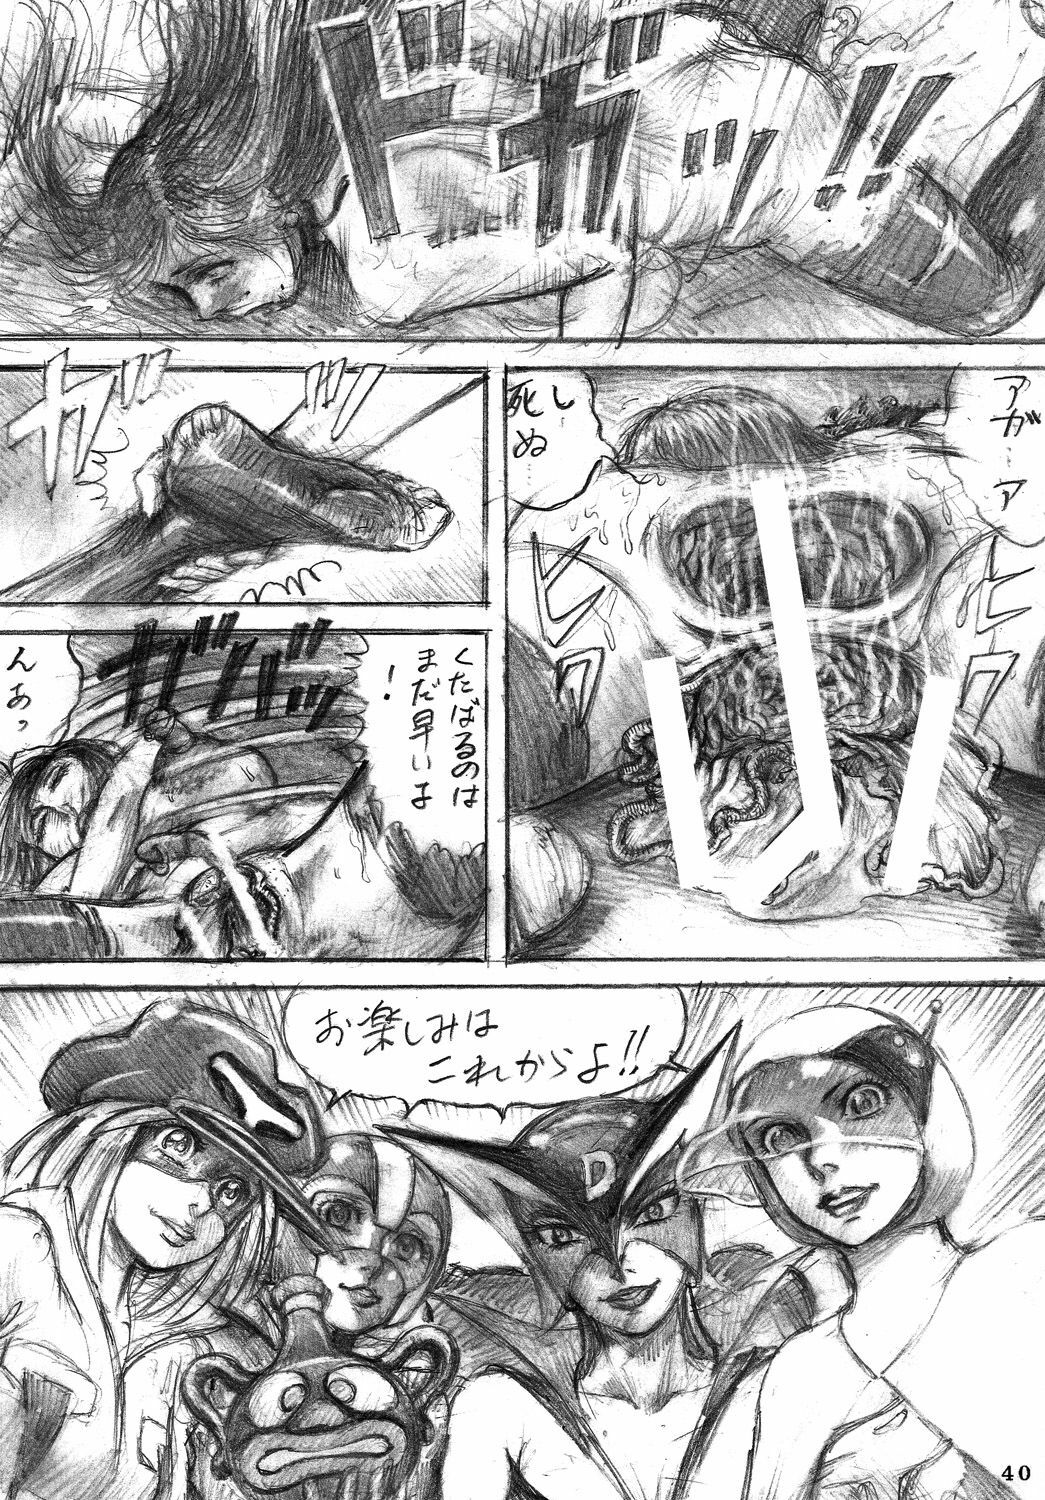 [DYNAMITE HONEY] Tatsunoko Dynamite page 39 full